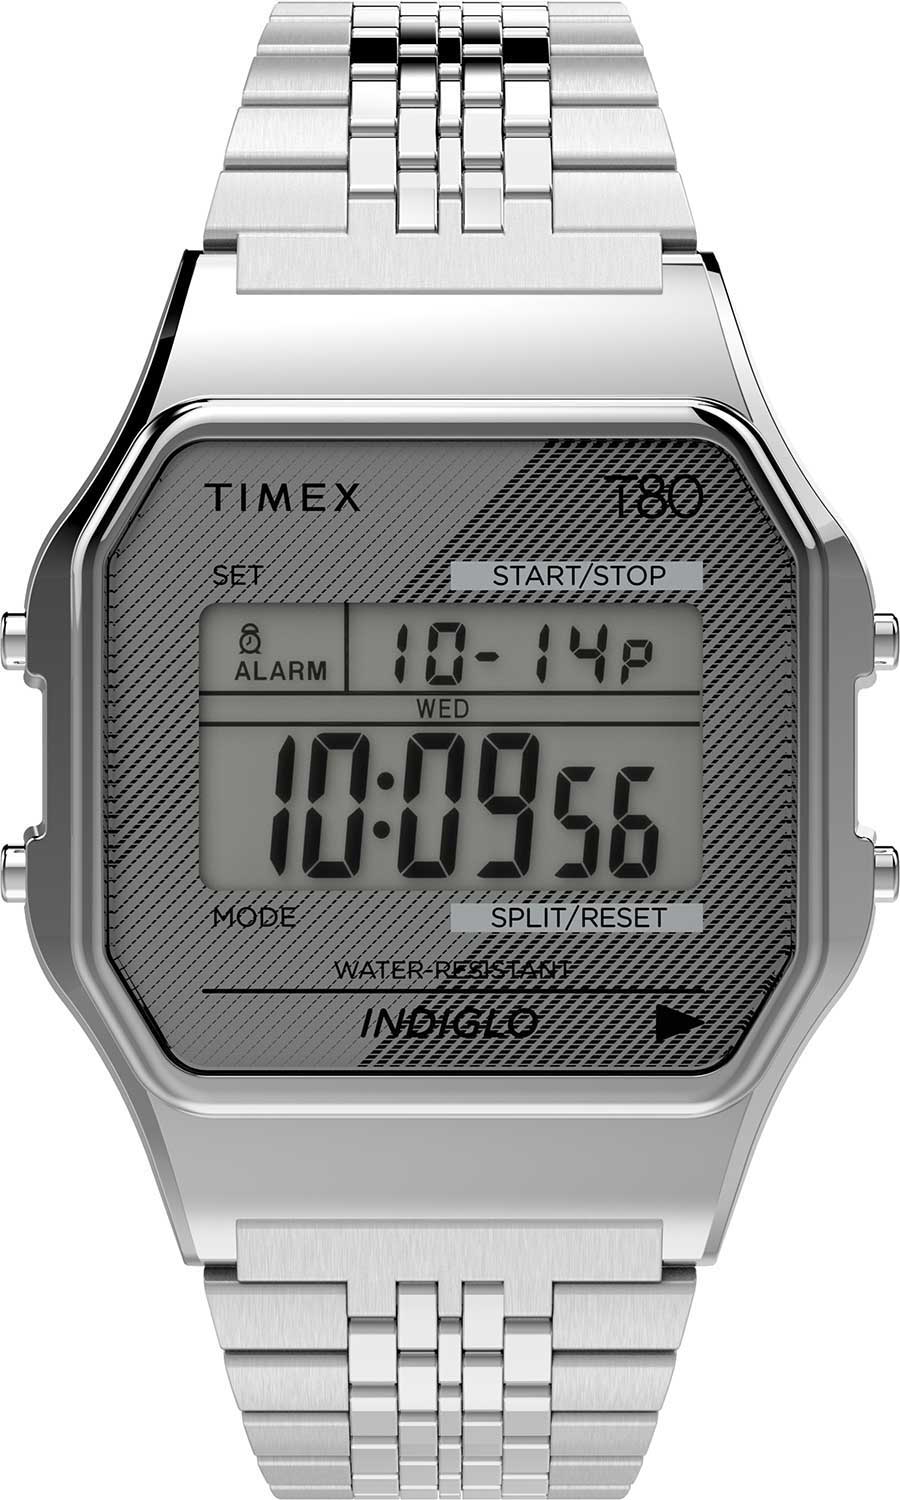   Timex TW2R79300  